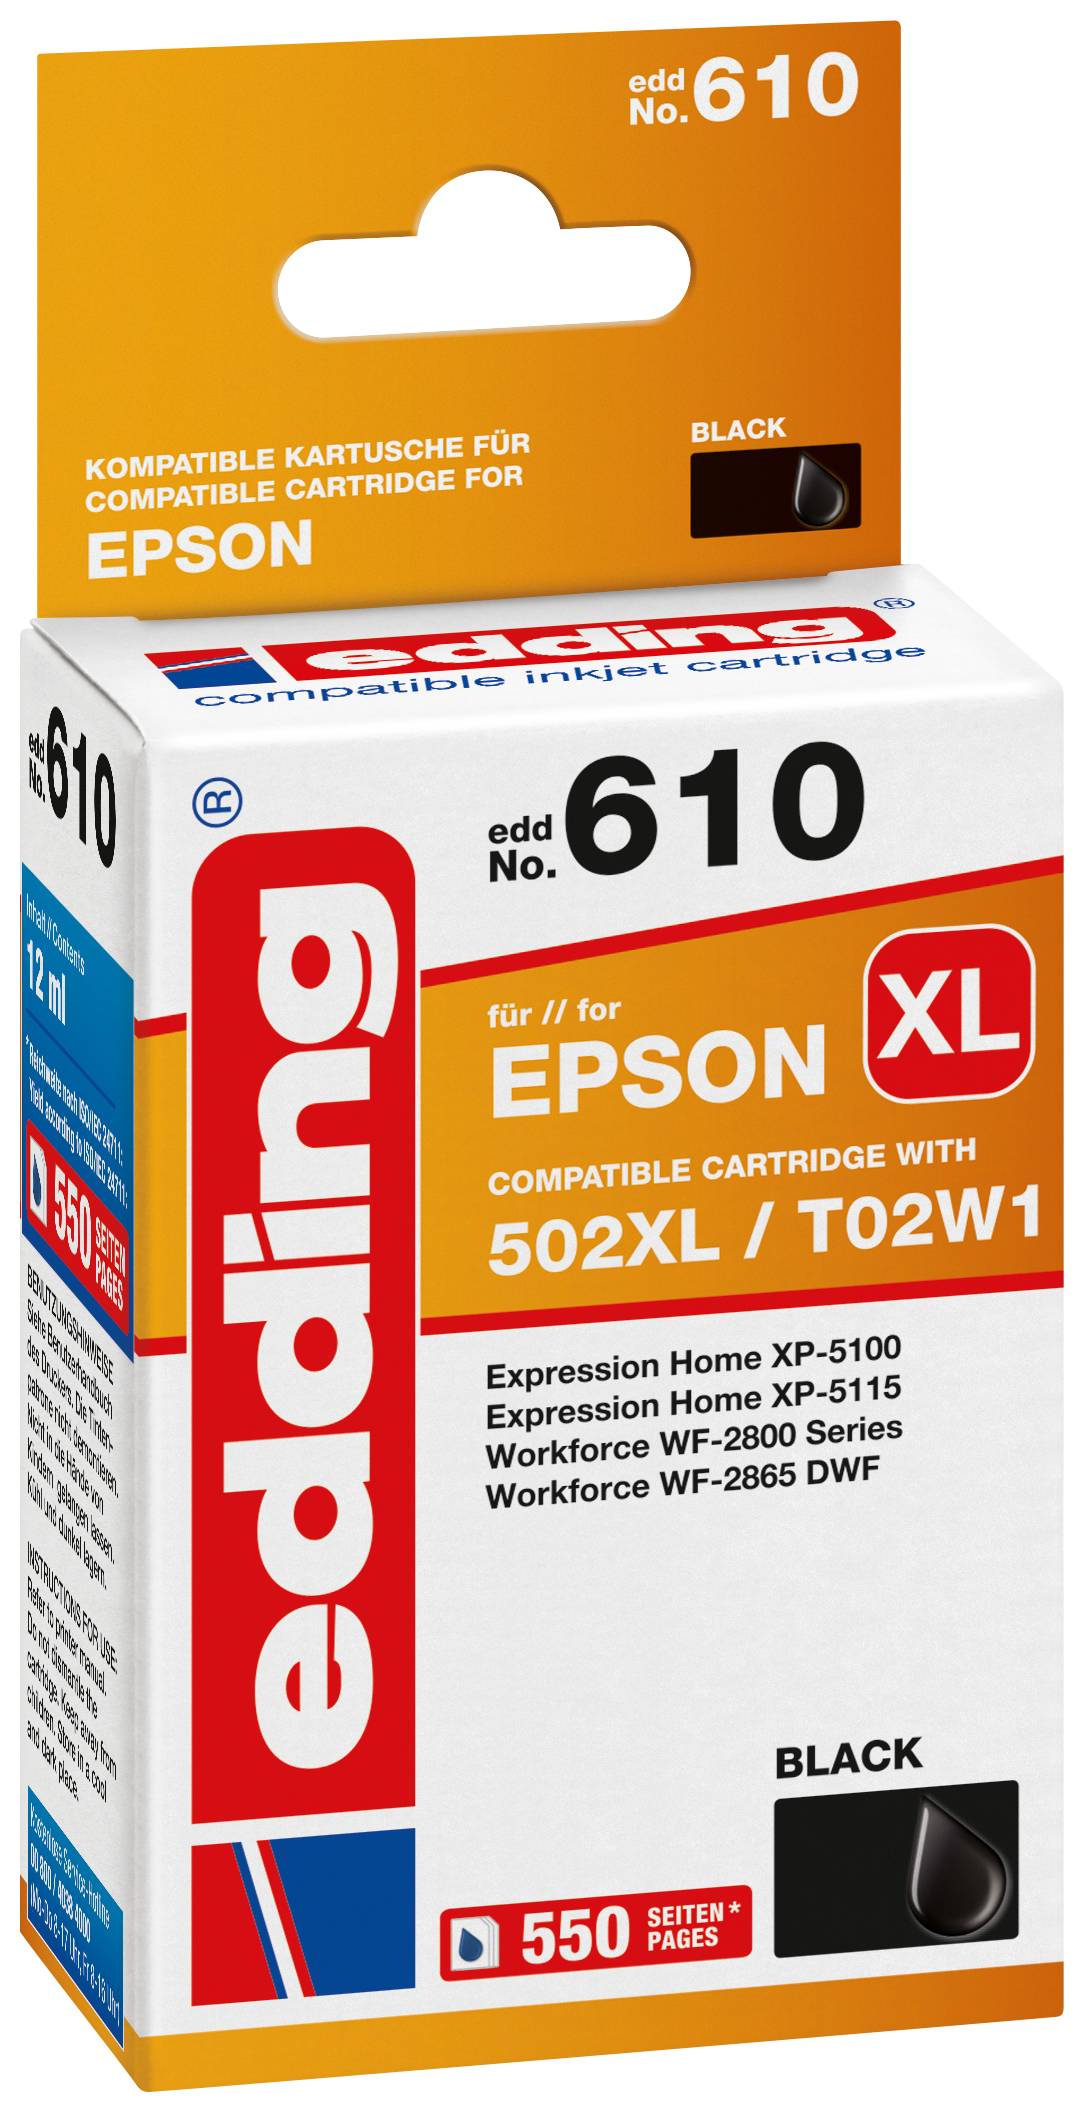 EDDING Tintenpatrone ersetzt Epson 502XL / T02W1 Kompatibel einzeln Schwarz EDD-610 18-610